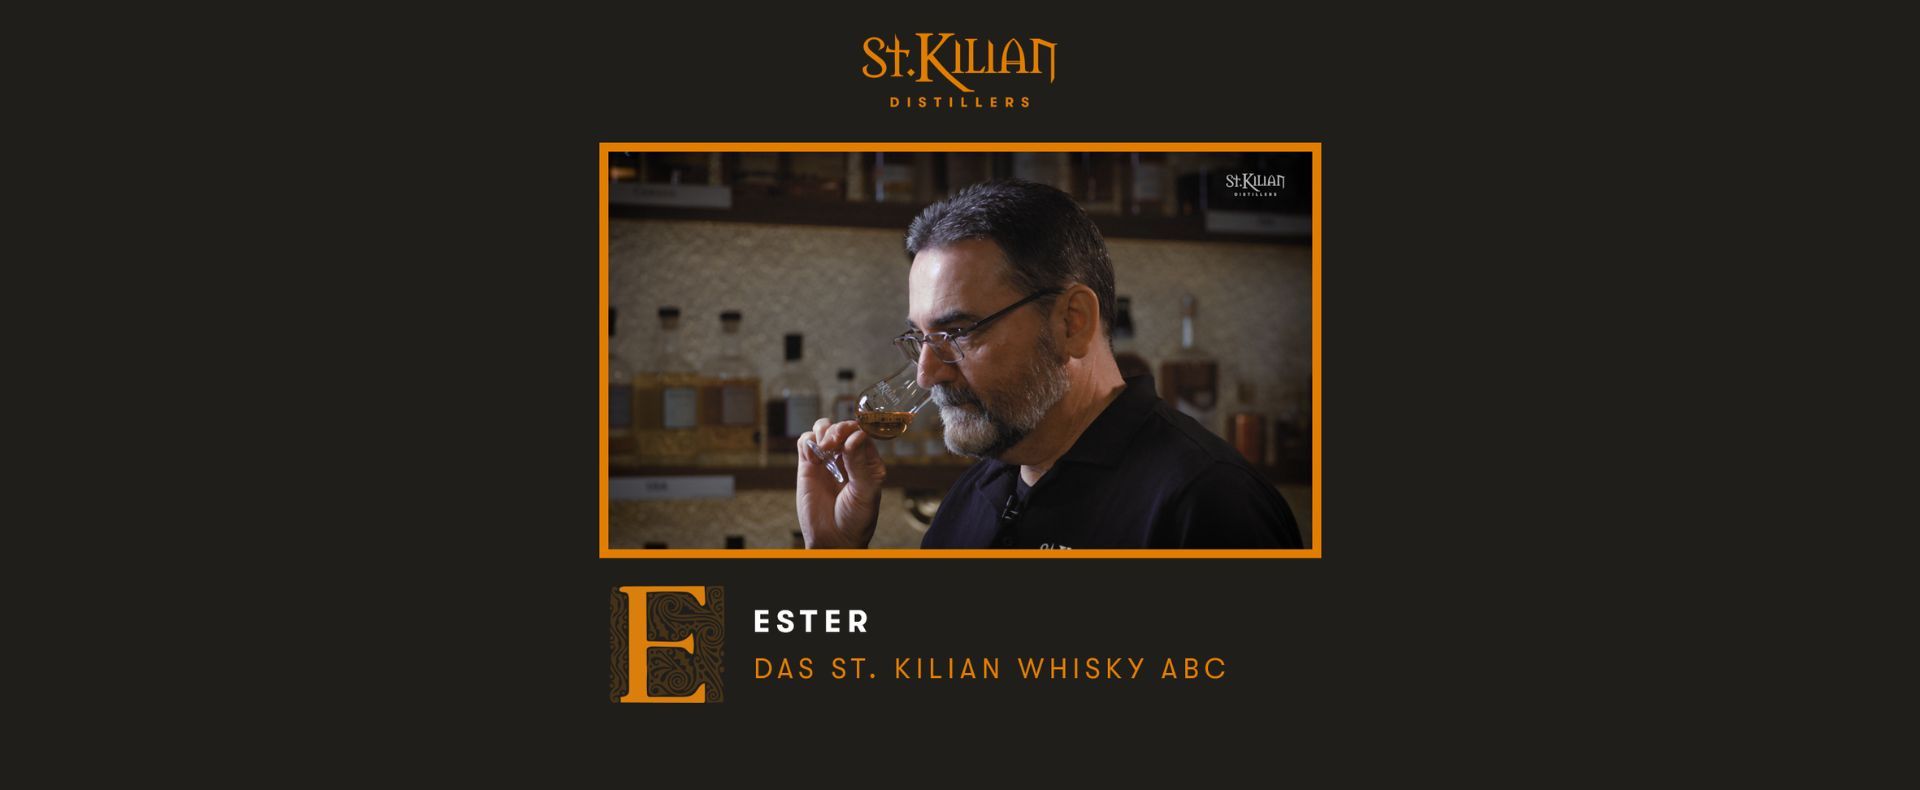 Whisky ABC - E wie Ester